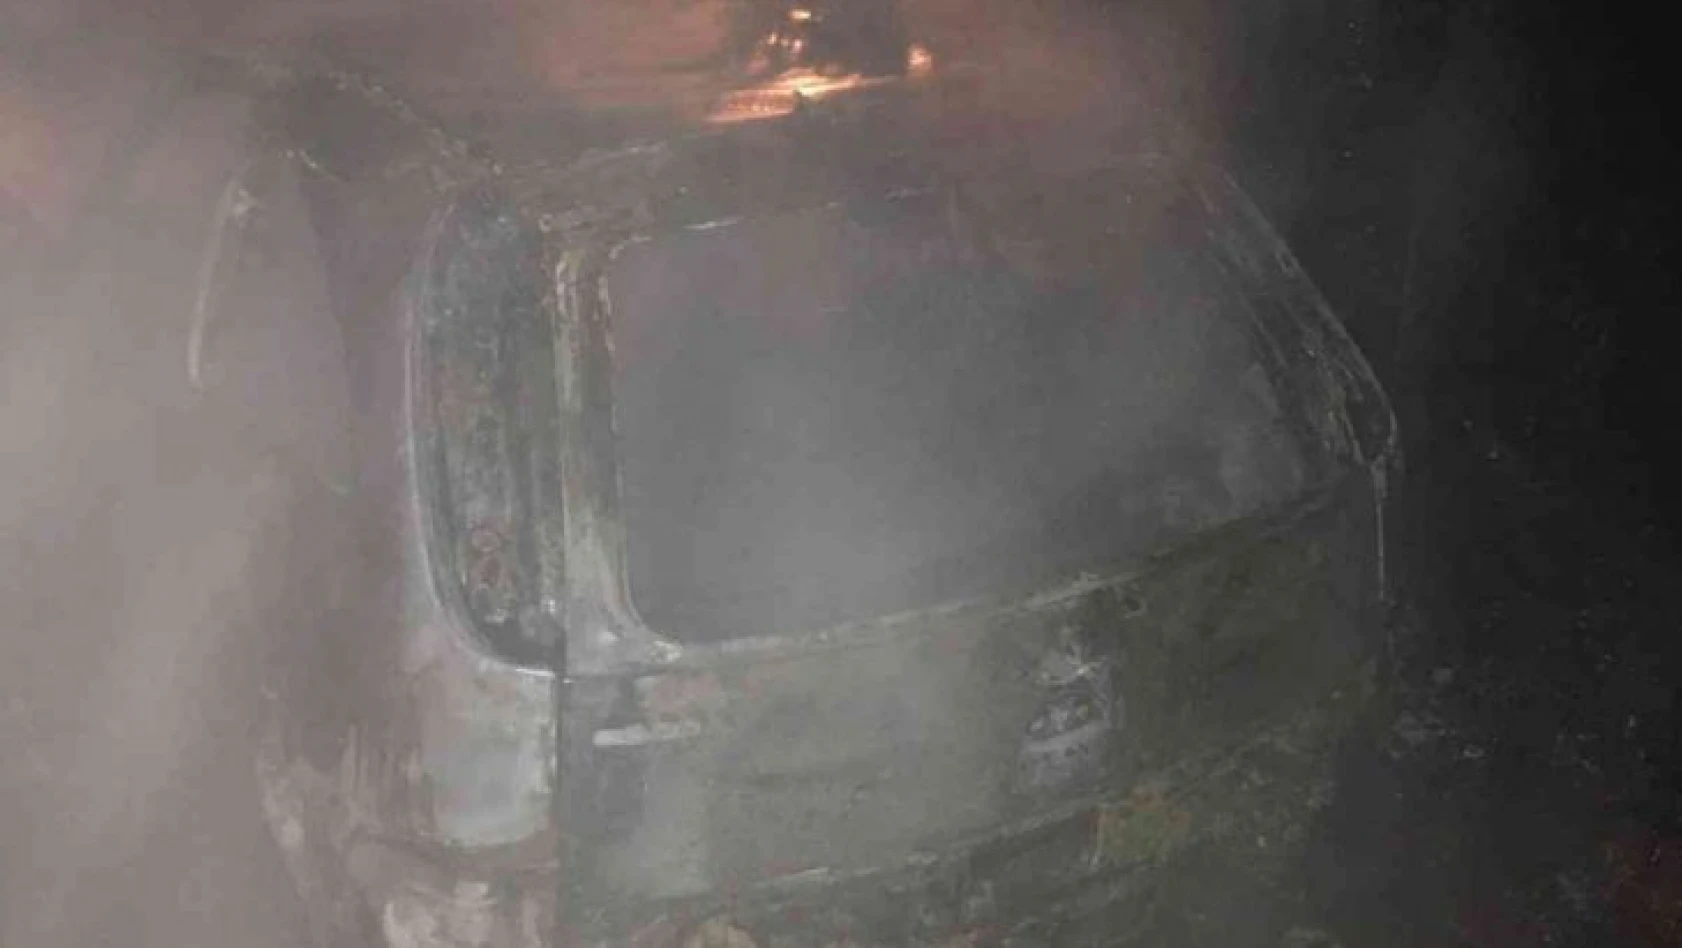 Gaz pedalı takılı kalan araç, alev alev yandı